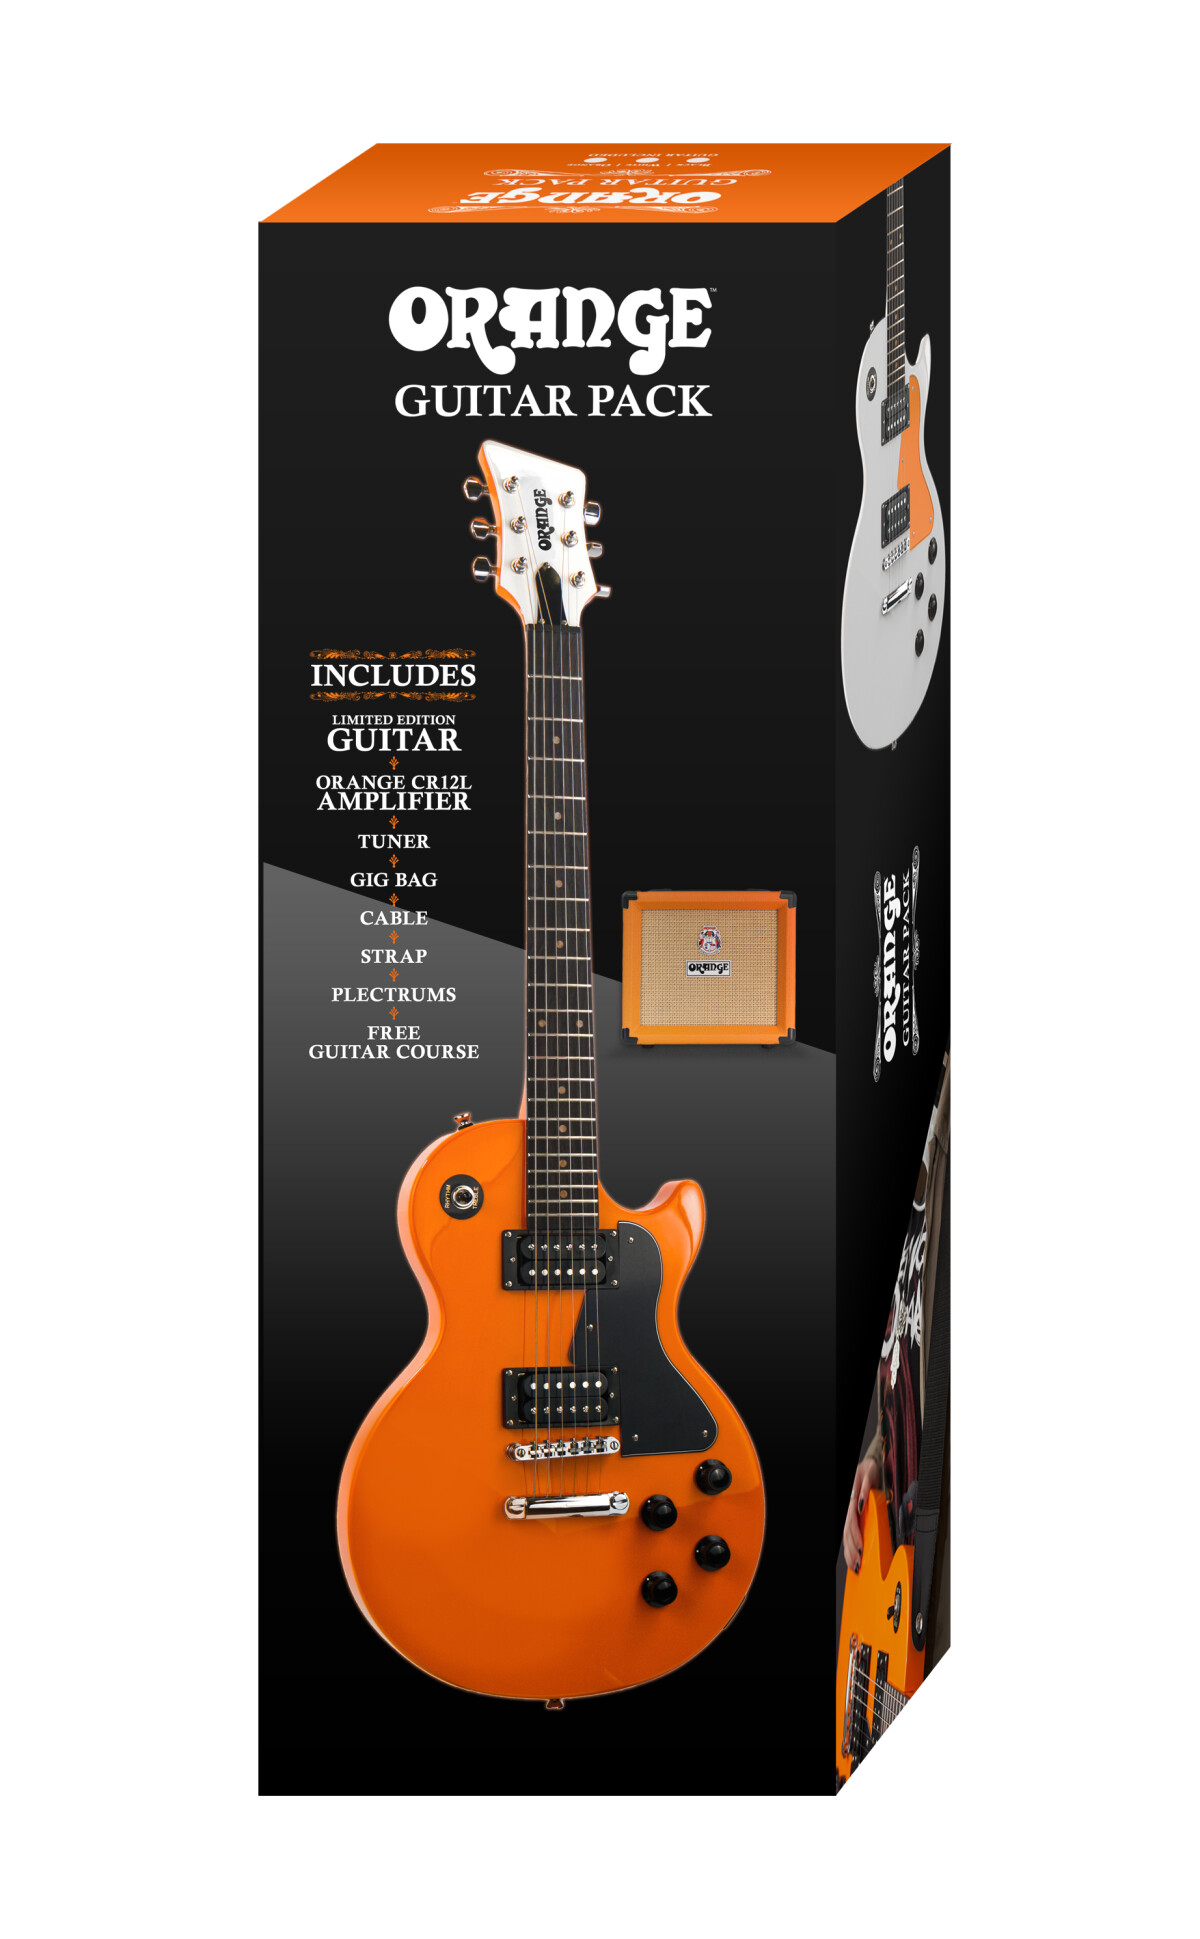 Orange lance un pack guitare complet